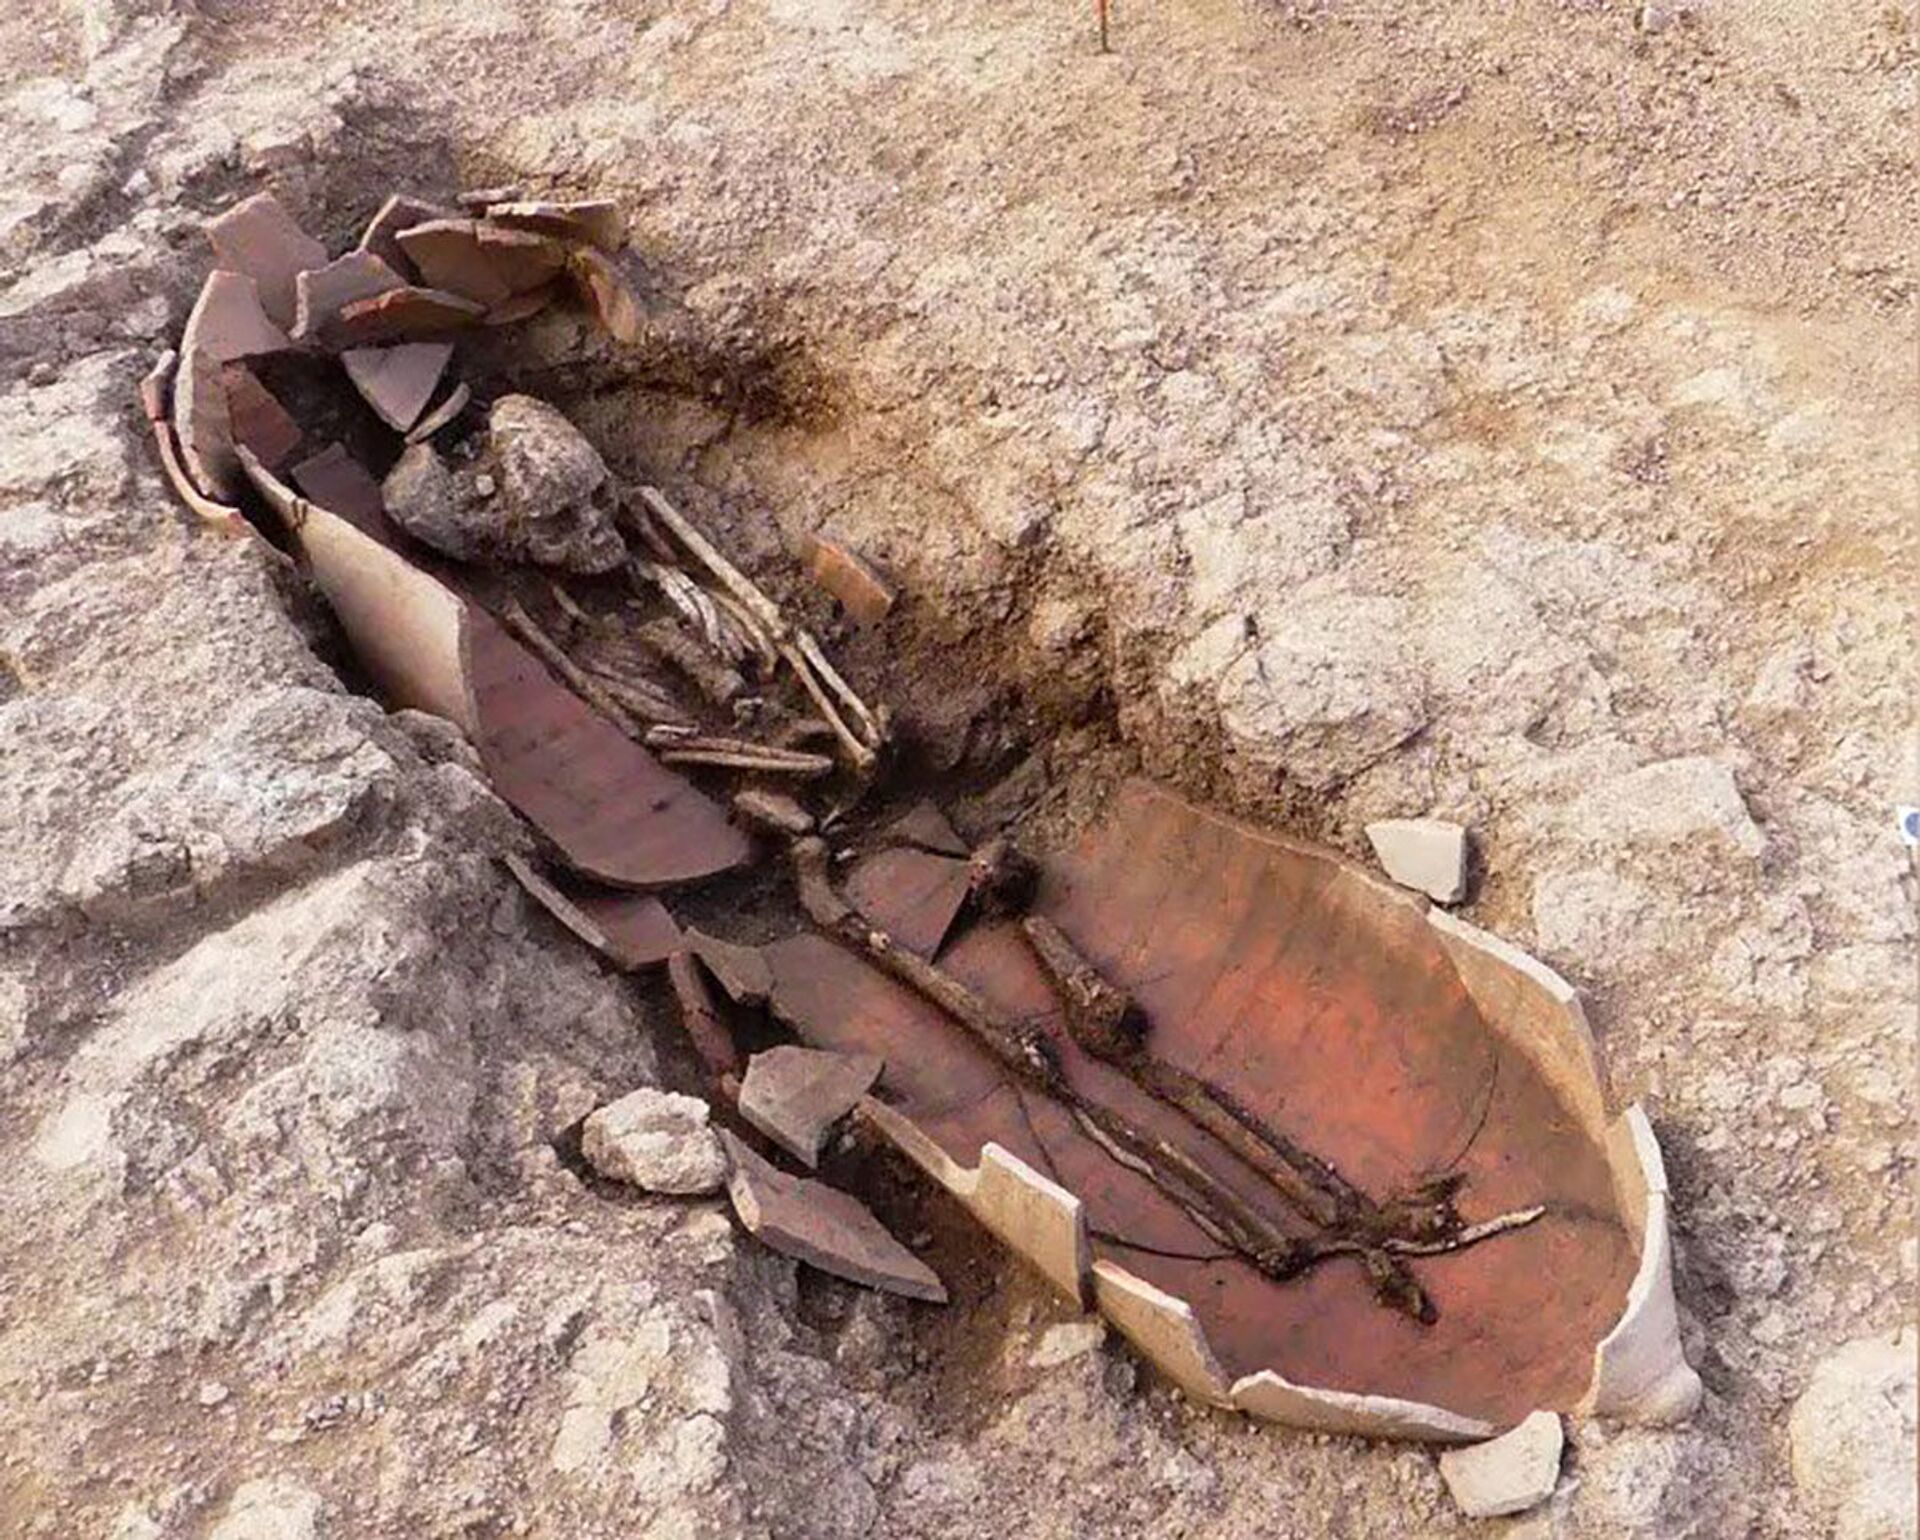 Descoberta antiga necrópole com humanos enterrados dentro de jarros africanos em Córsega (FOTOS) - Sputnik Brasil, 1920, 14.05.2021